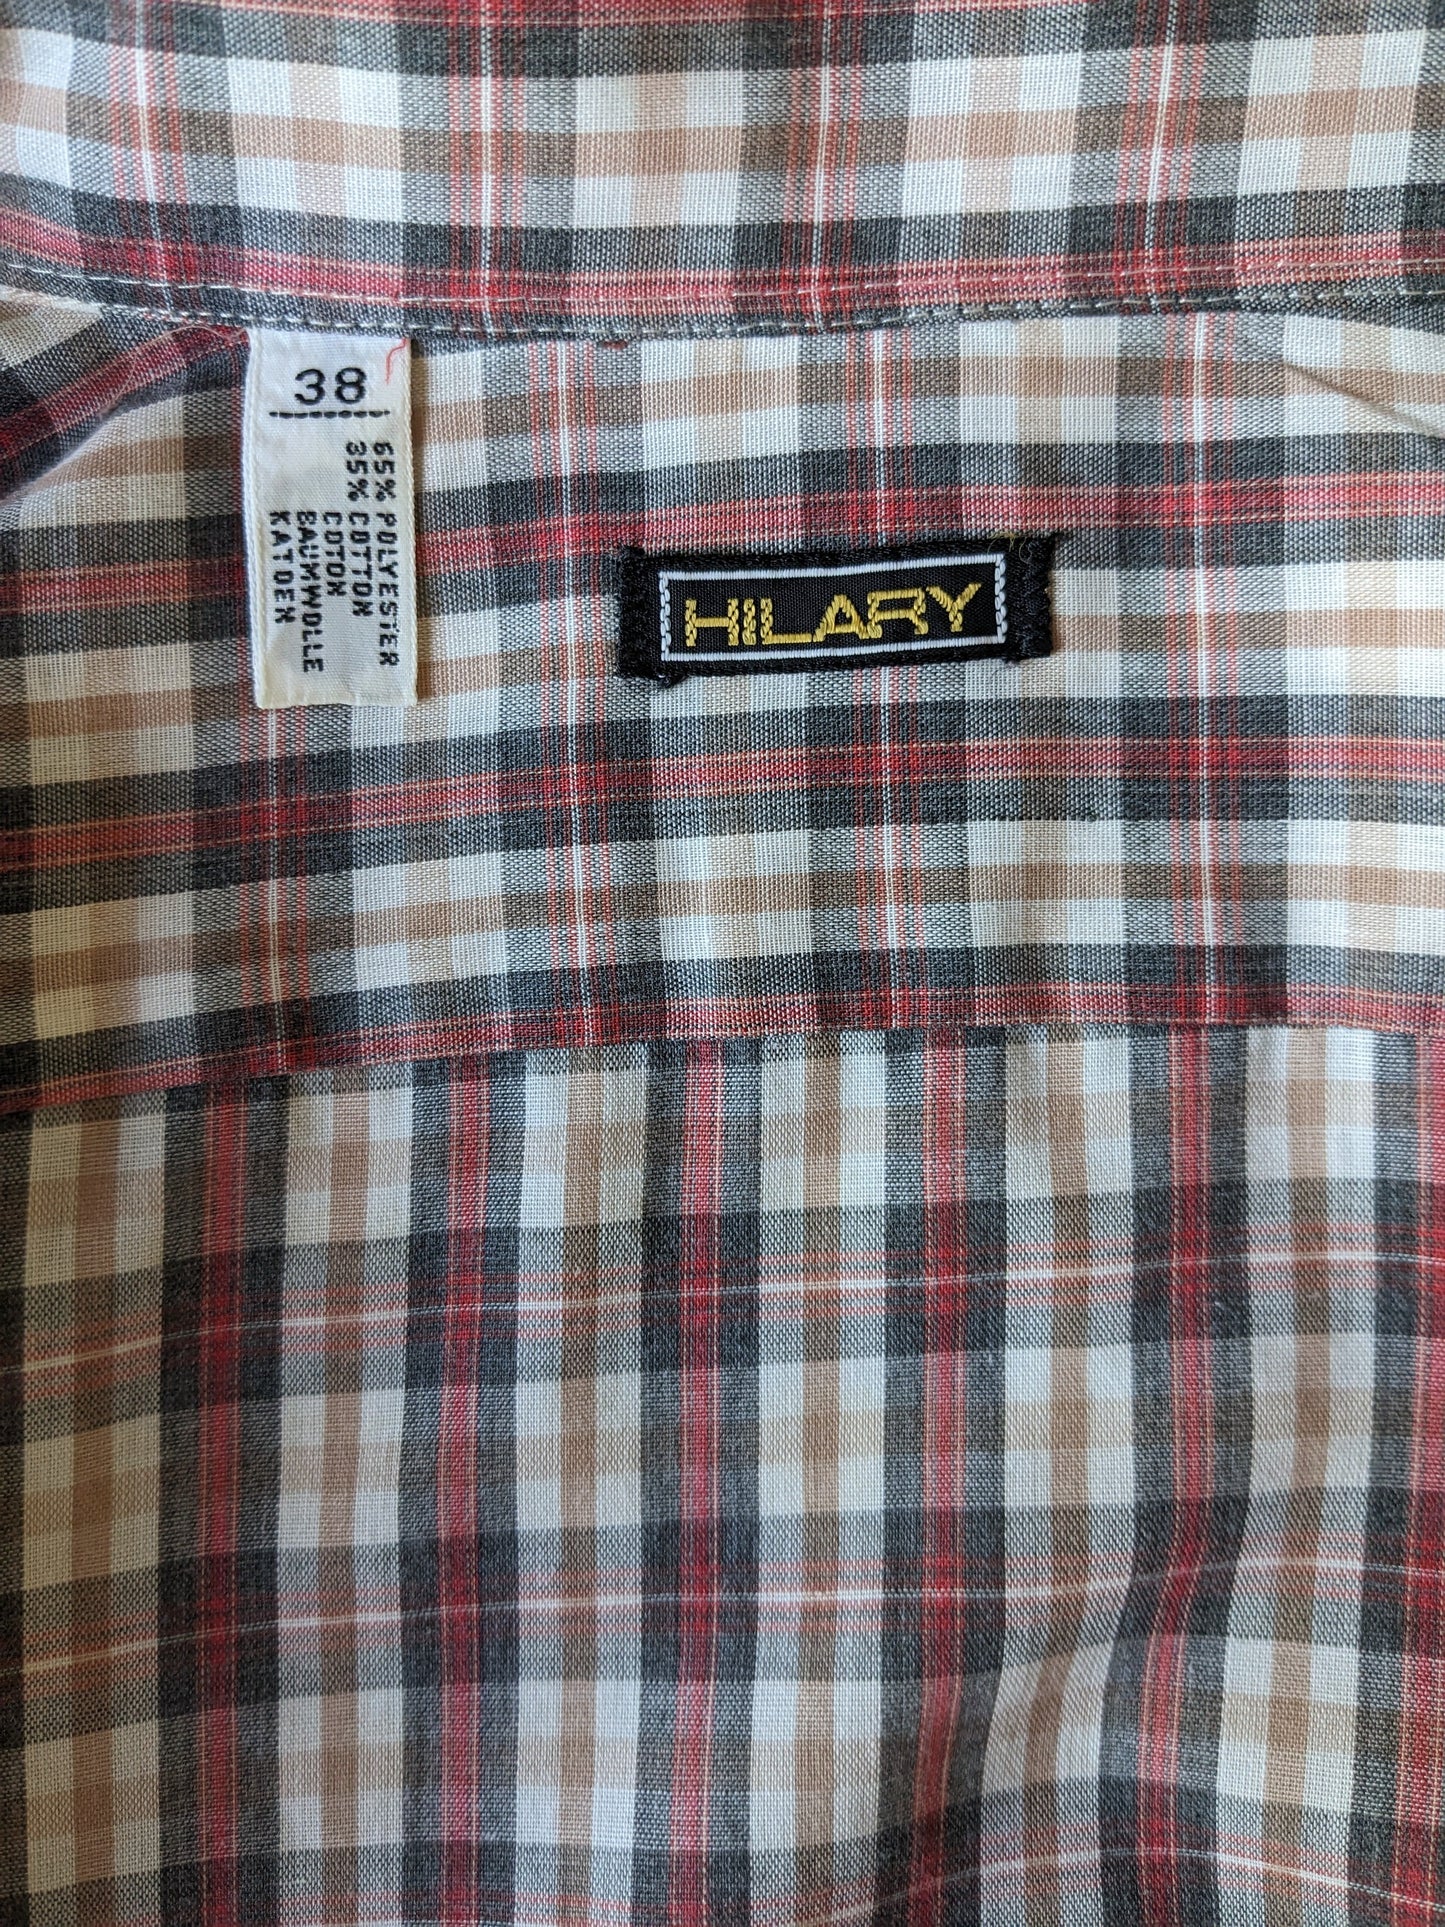 Vintage 70's Hilary getailleerd overhemd. Rood Zwart Roze geruit. Maat 38 / S.